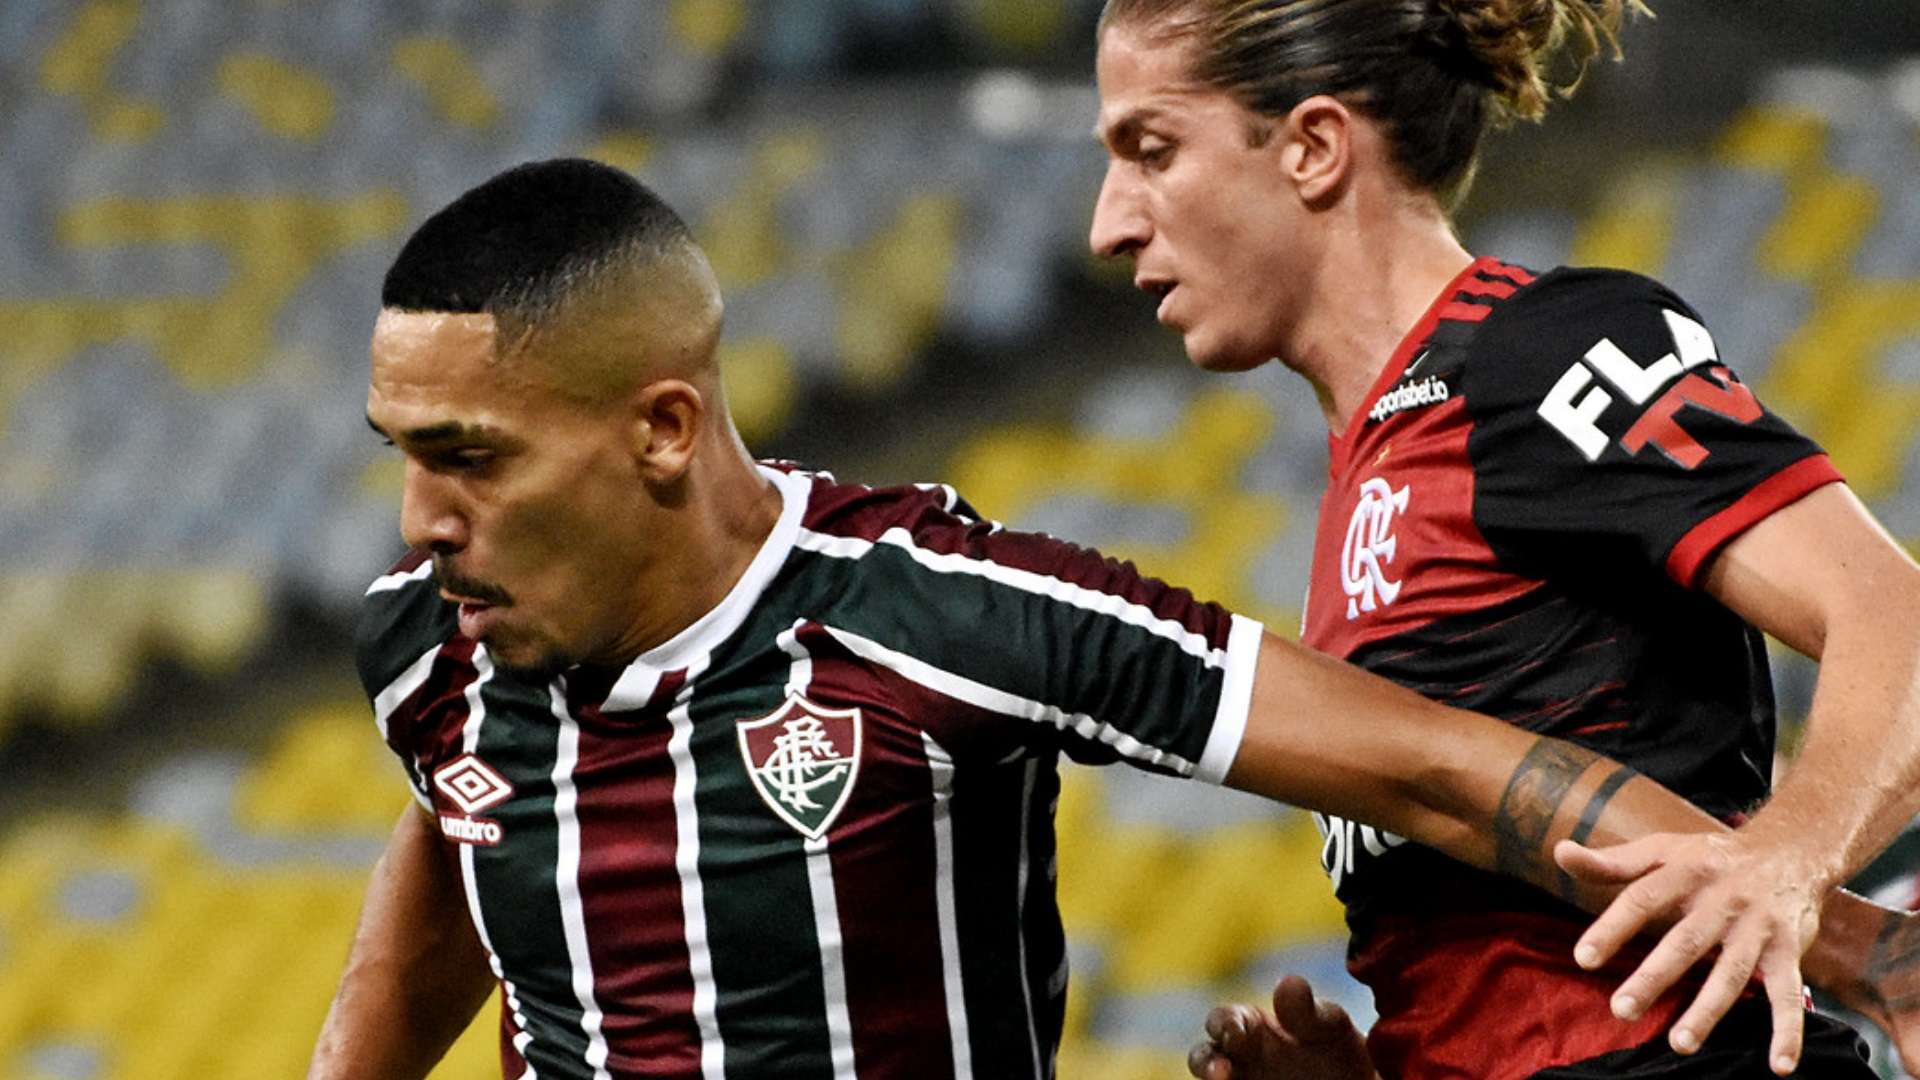 Gilberto Filipe Luís Fluminense Flamengo Taça Rio 2020 Carioca 08 07 2020